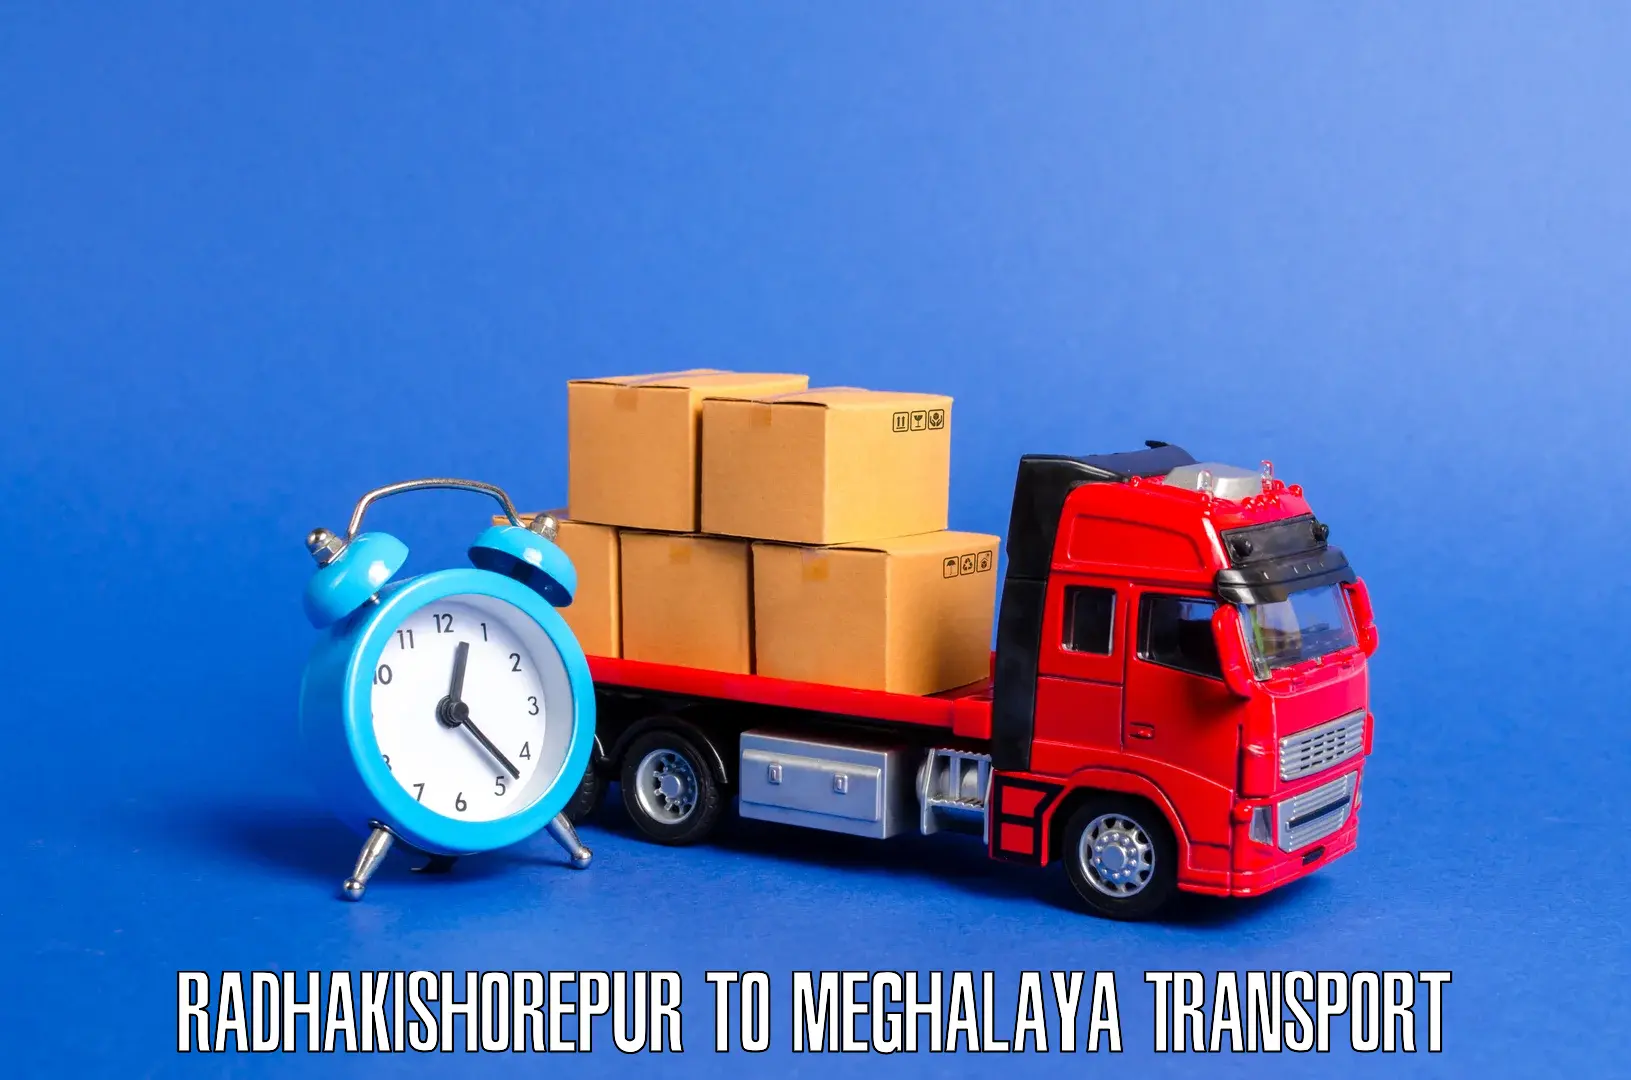 Furniture transport service Radhakishorepur to NIT Meghalaya